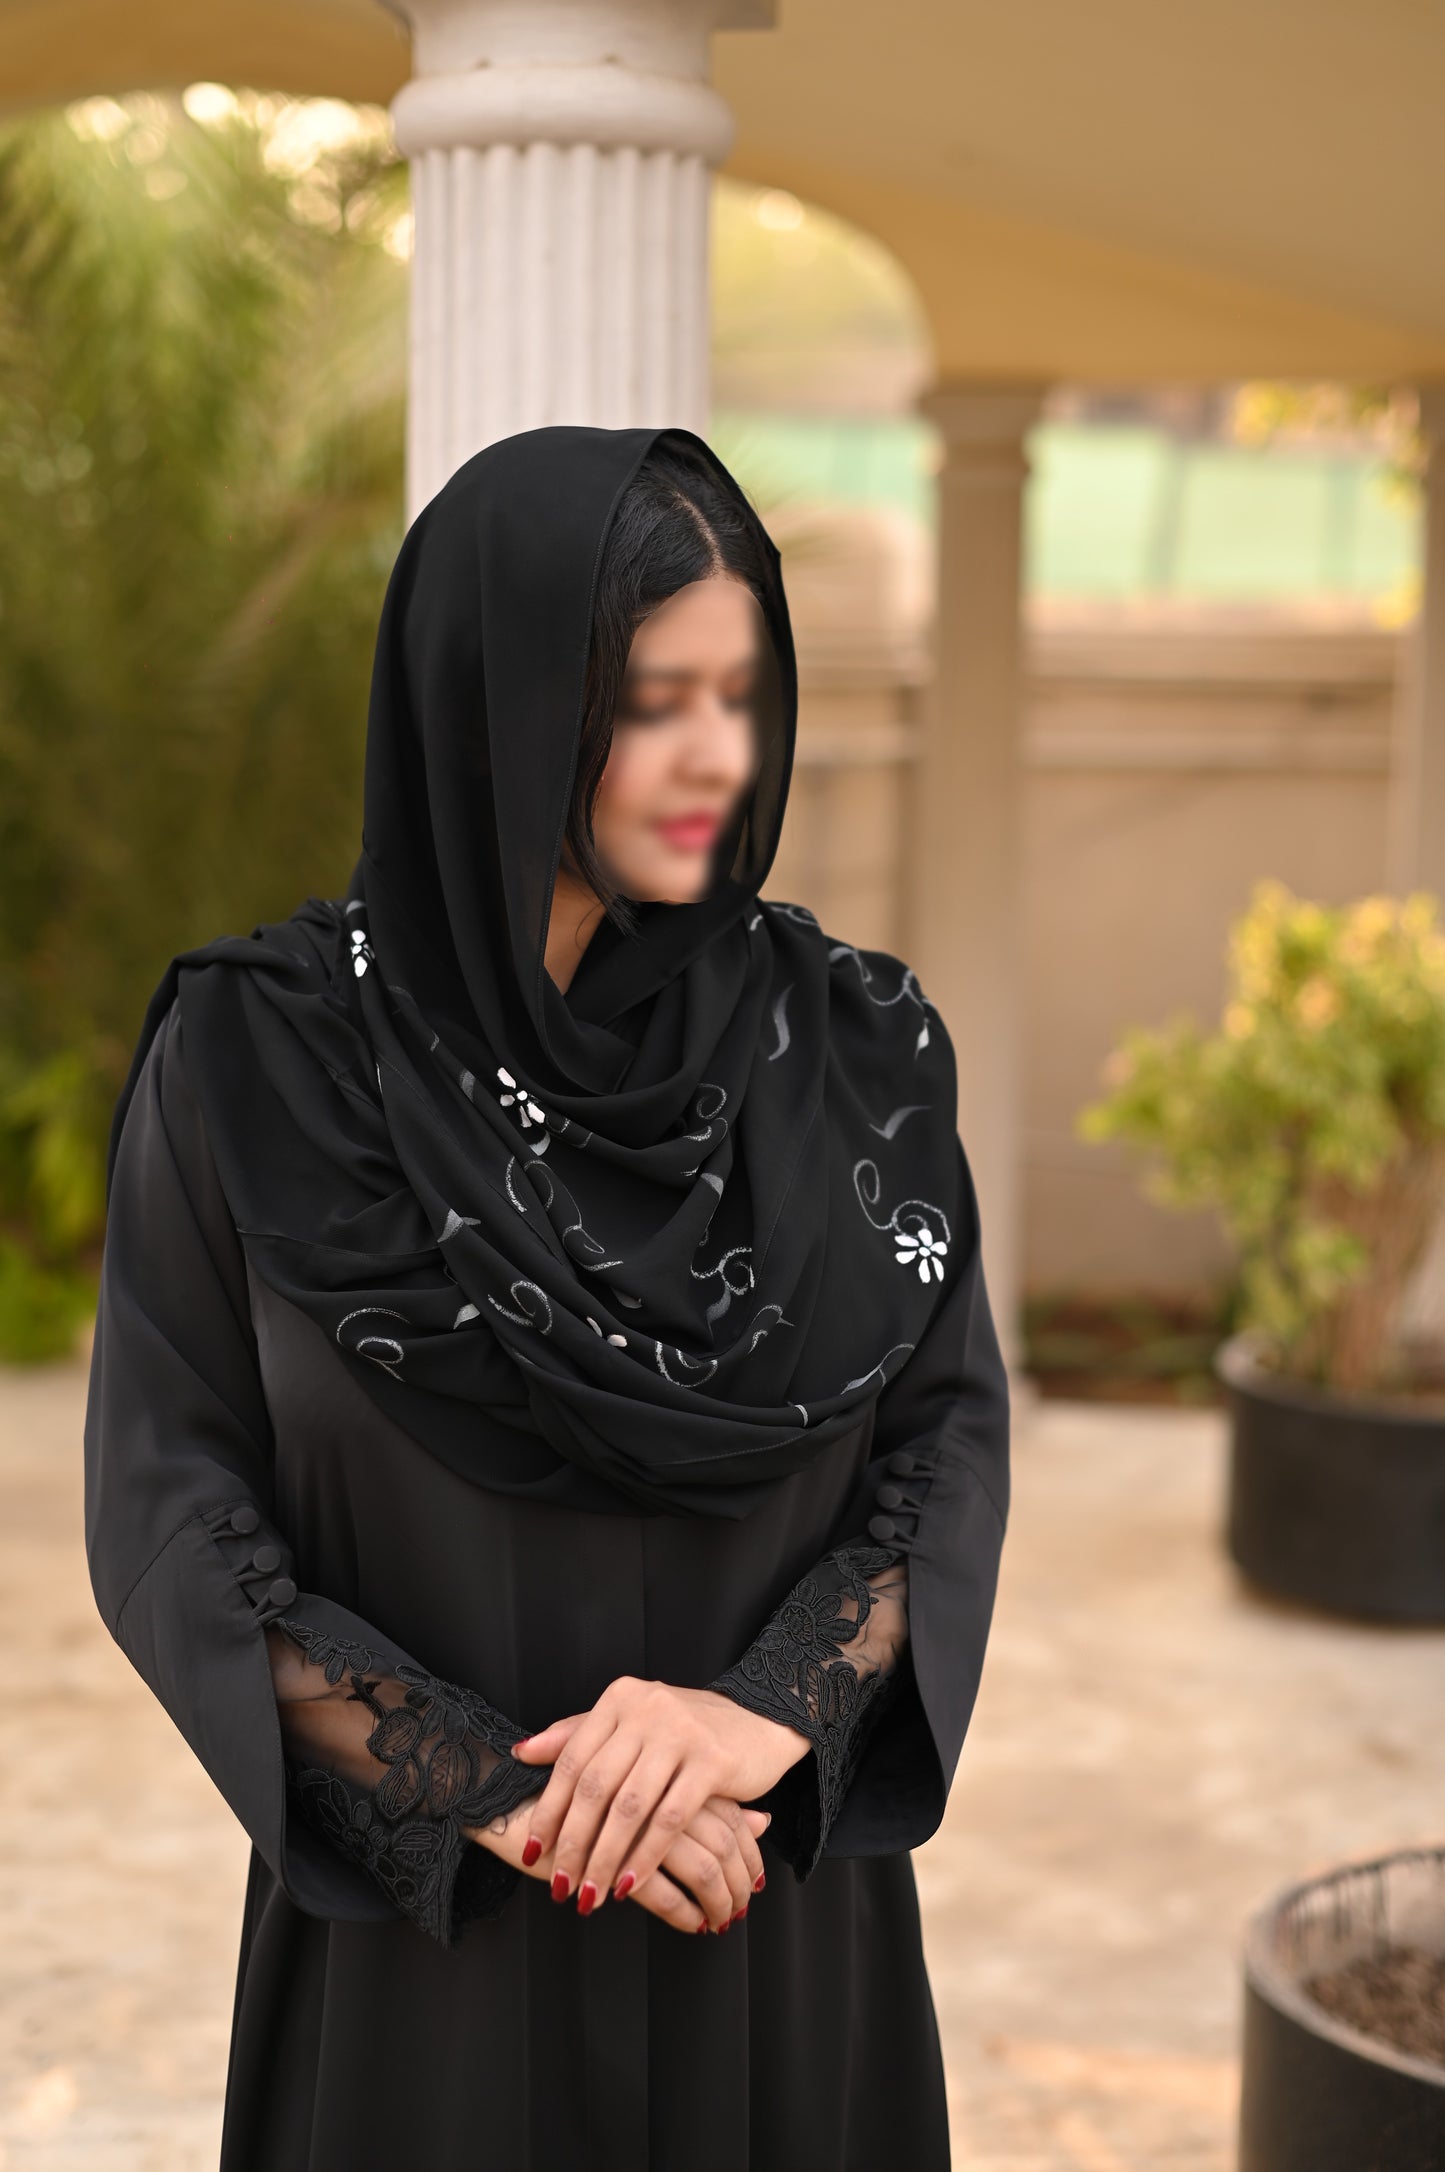 Modest basic black abaya